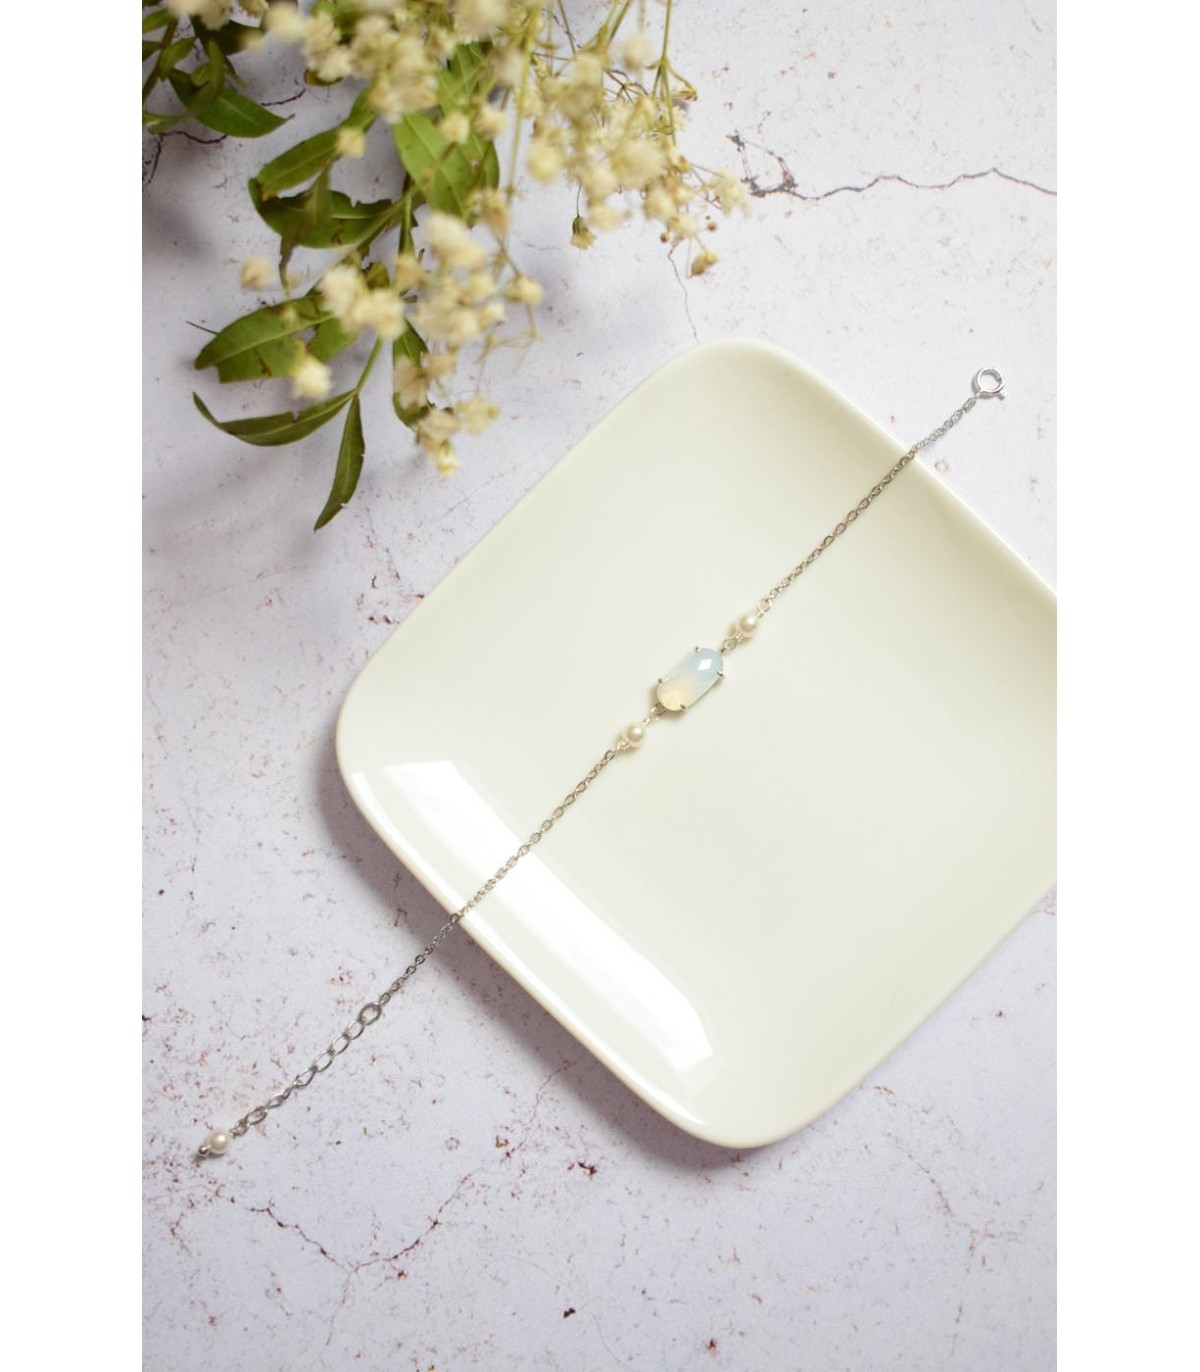 Bracelet de mariage Glamour avec strass blanc laiteux et perles nacrées sur chaine acier inoxydable.